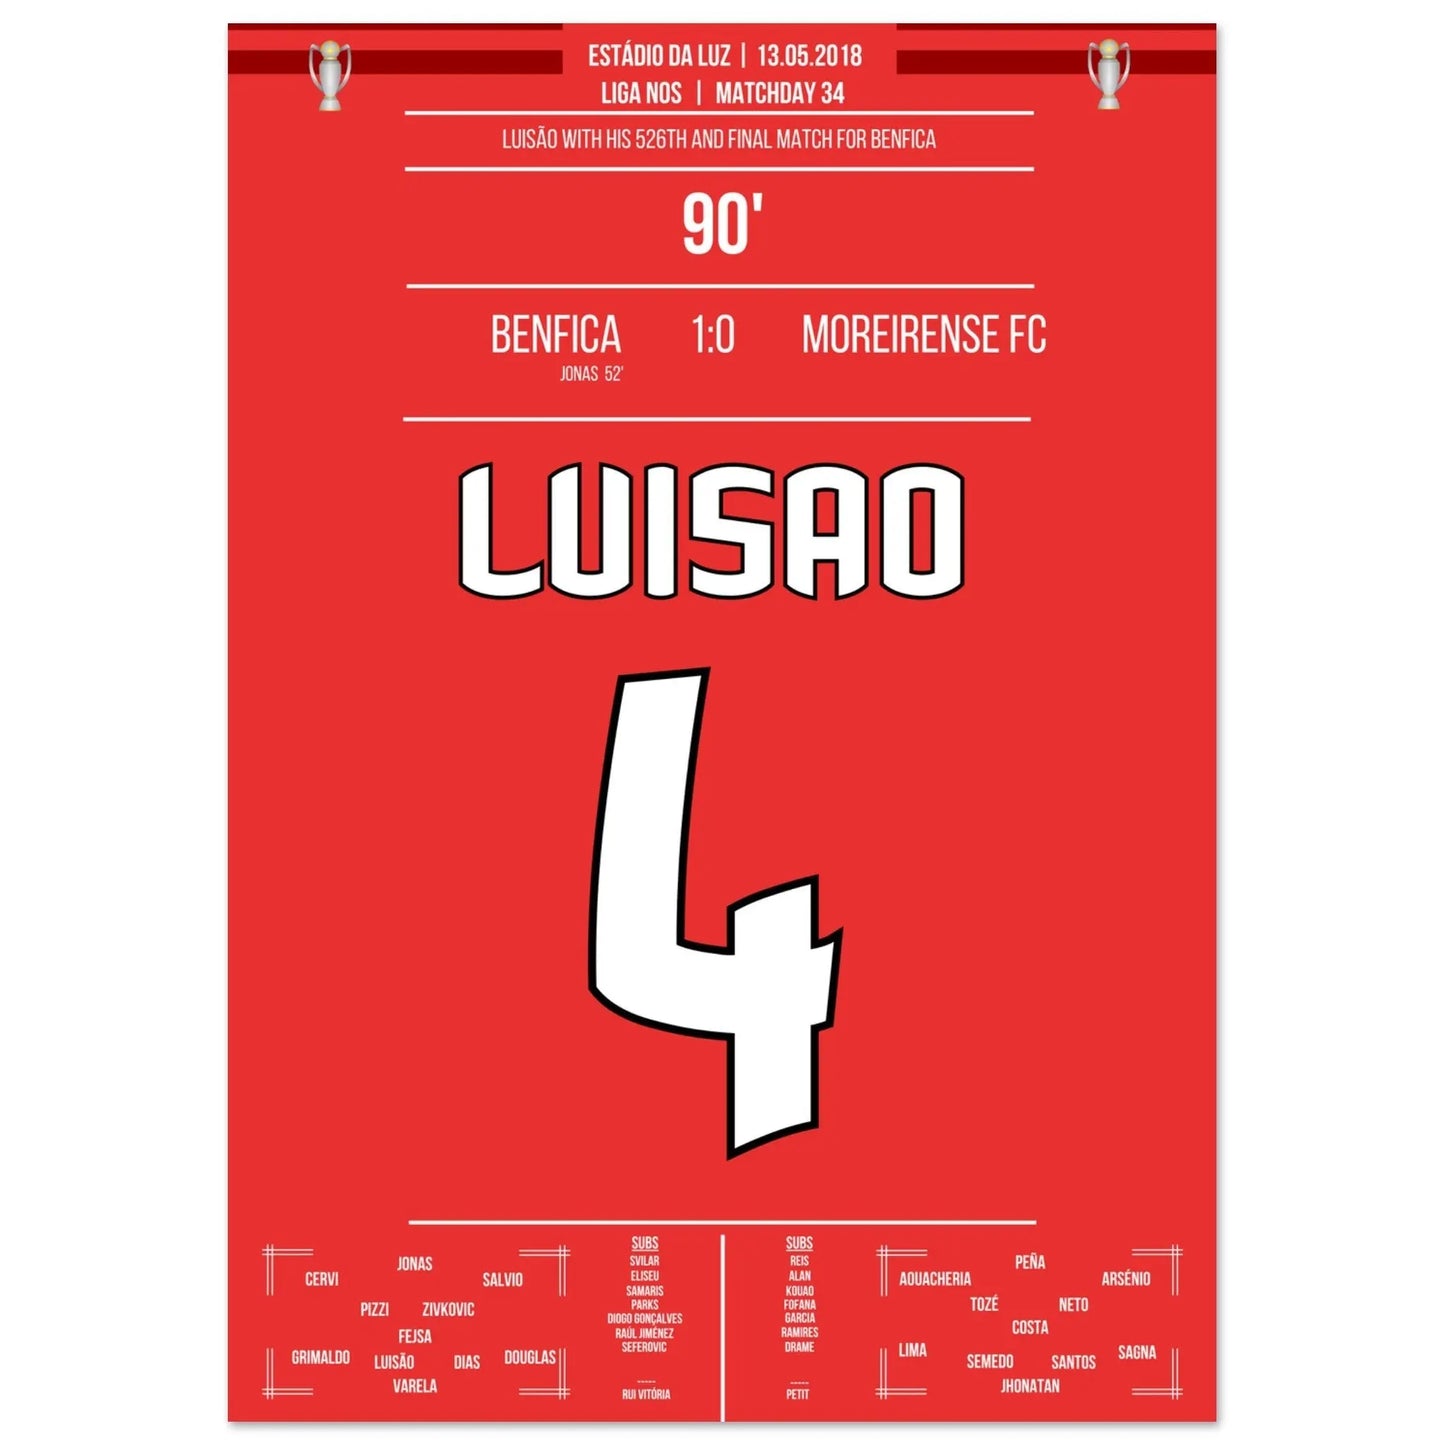 Luisao's laatste wedstrijd voor Benfica in 2018